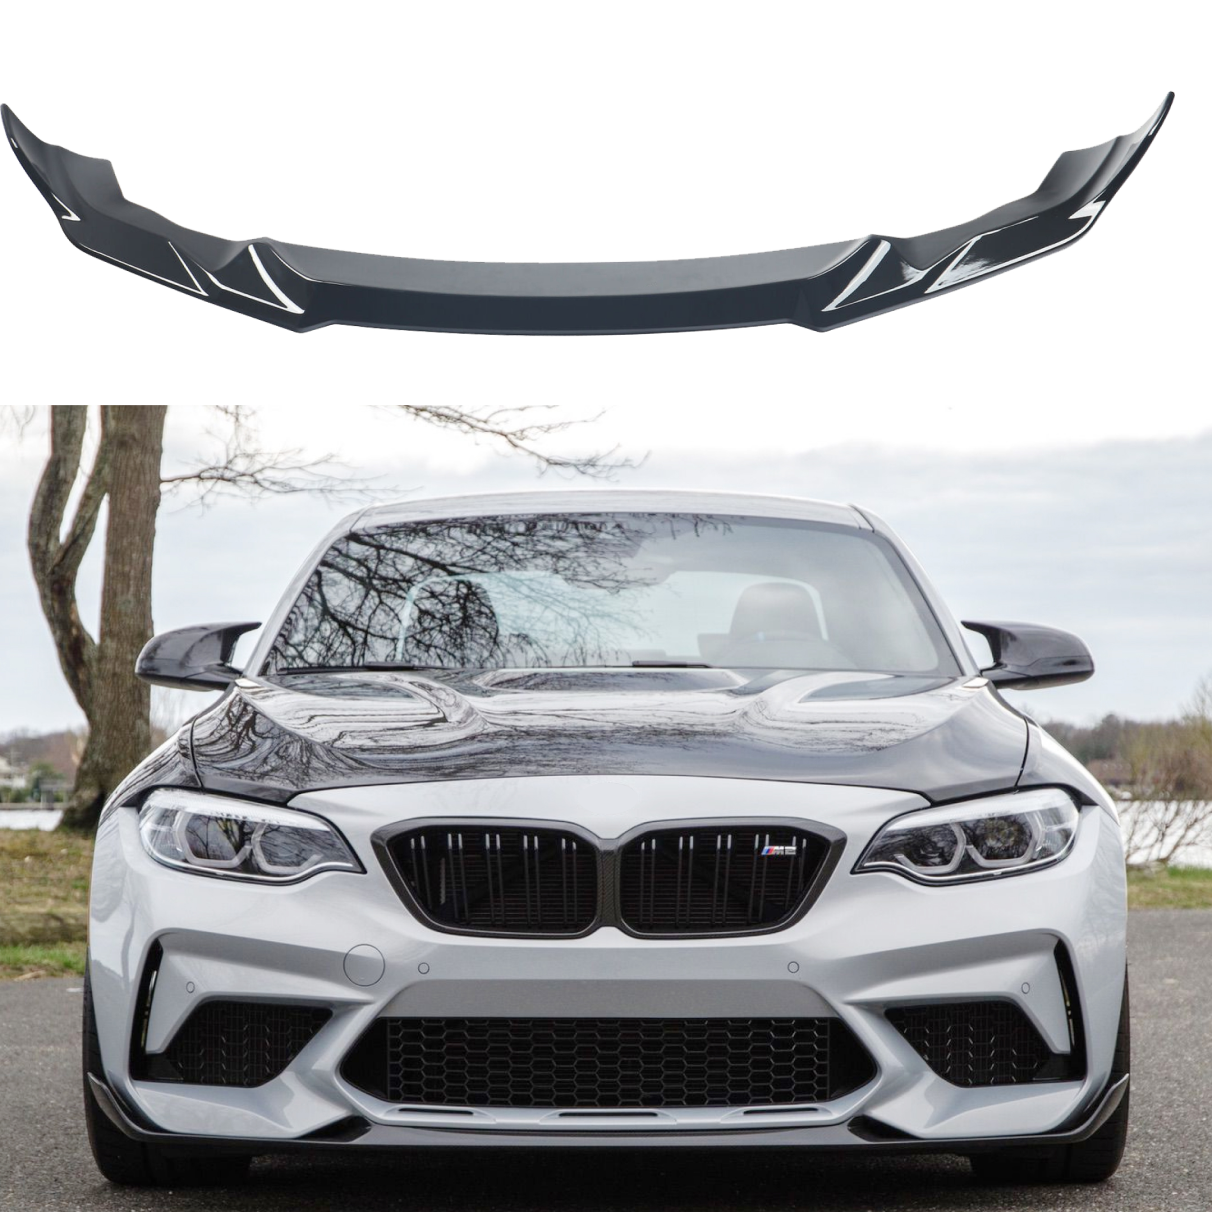 Fits 2019-21 BMW F87 M2 CS Style Front Bumper Lip Splitter